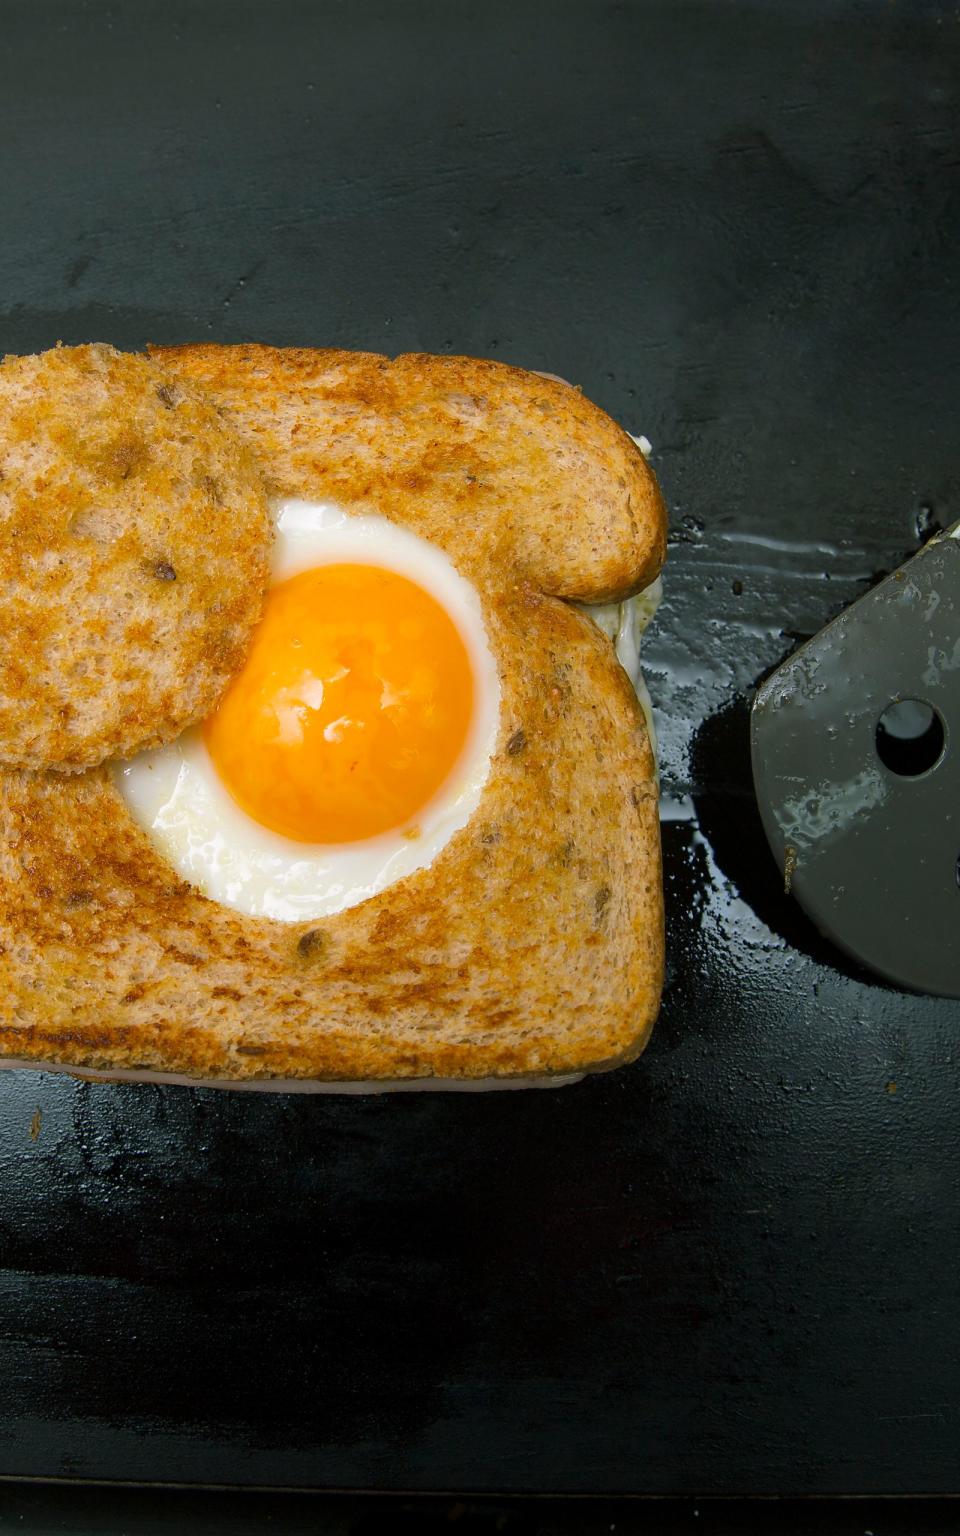 Nicht nur ein Gaumenschmaus, sondern auch schön anzuschauen sind Spiegeleier im Toast-Loch. Für dieses Rezept werden Toast-Scheiben mithilfe eines Glases kreisrund ausgestochen, sodass ein dicker Brot-Rand übrig bleibt. Im nächsten Schritt wird das Brot mit Speck in der Pfanne angebraten und schließlich die Eier in das Loch gegossen. (Bild: iStock/kemirada)